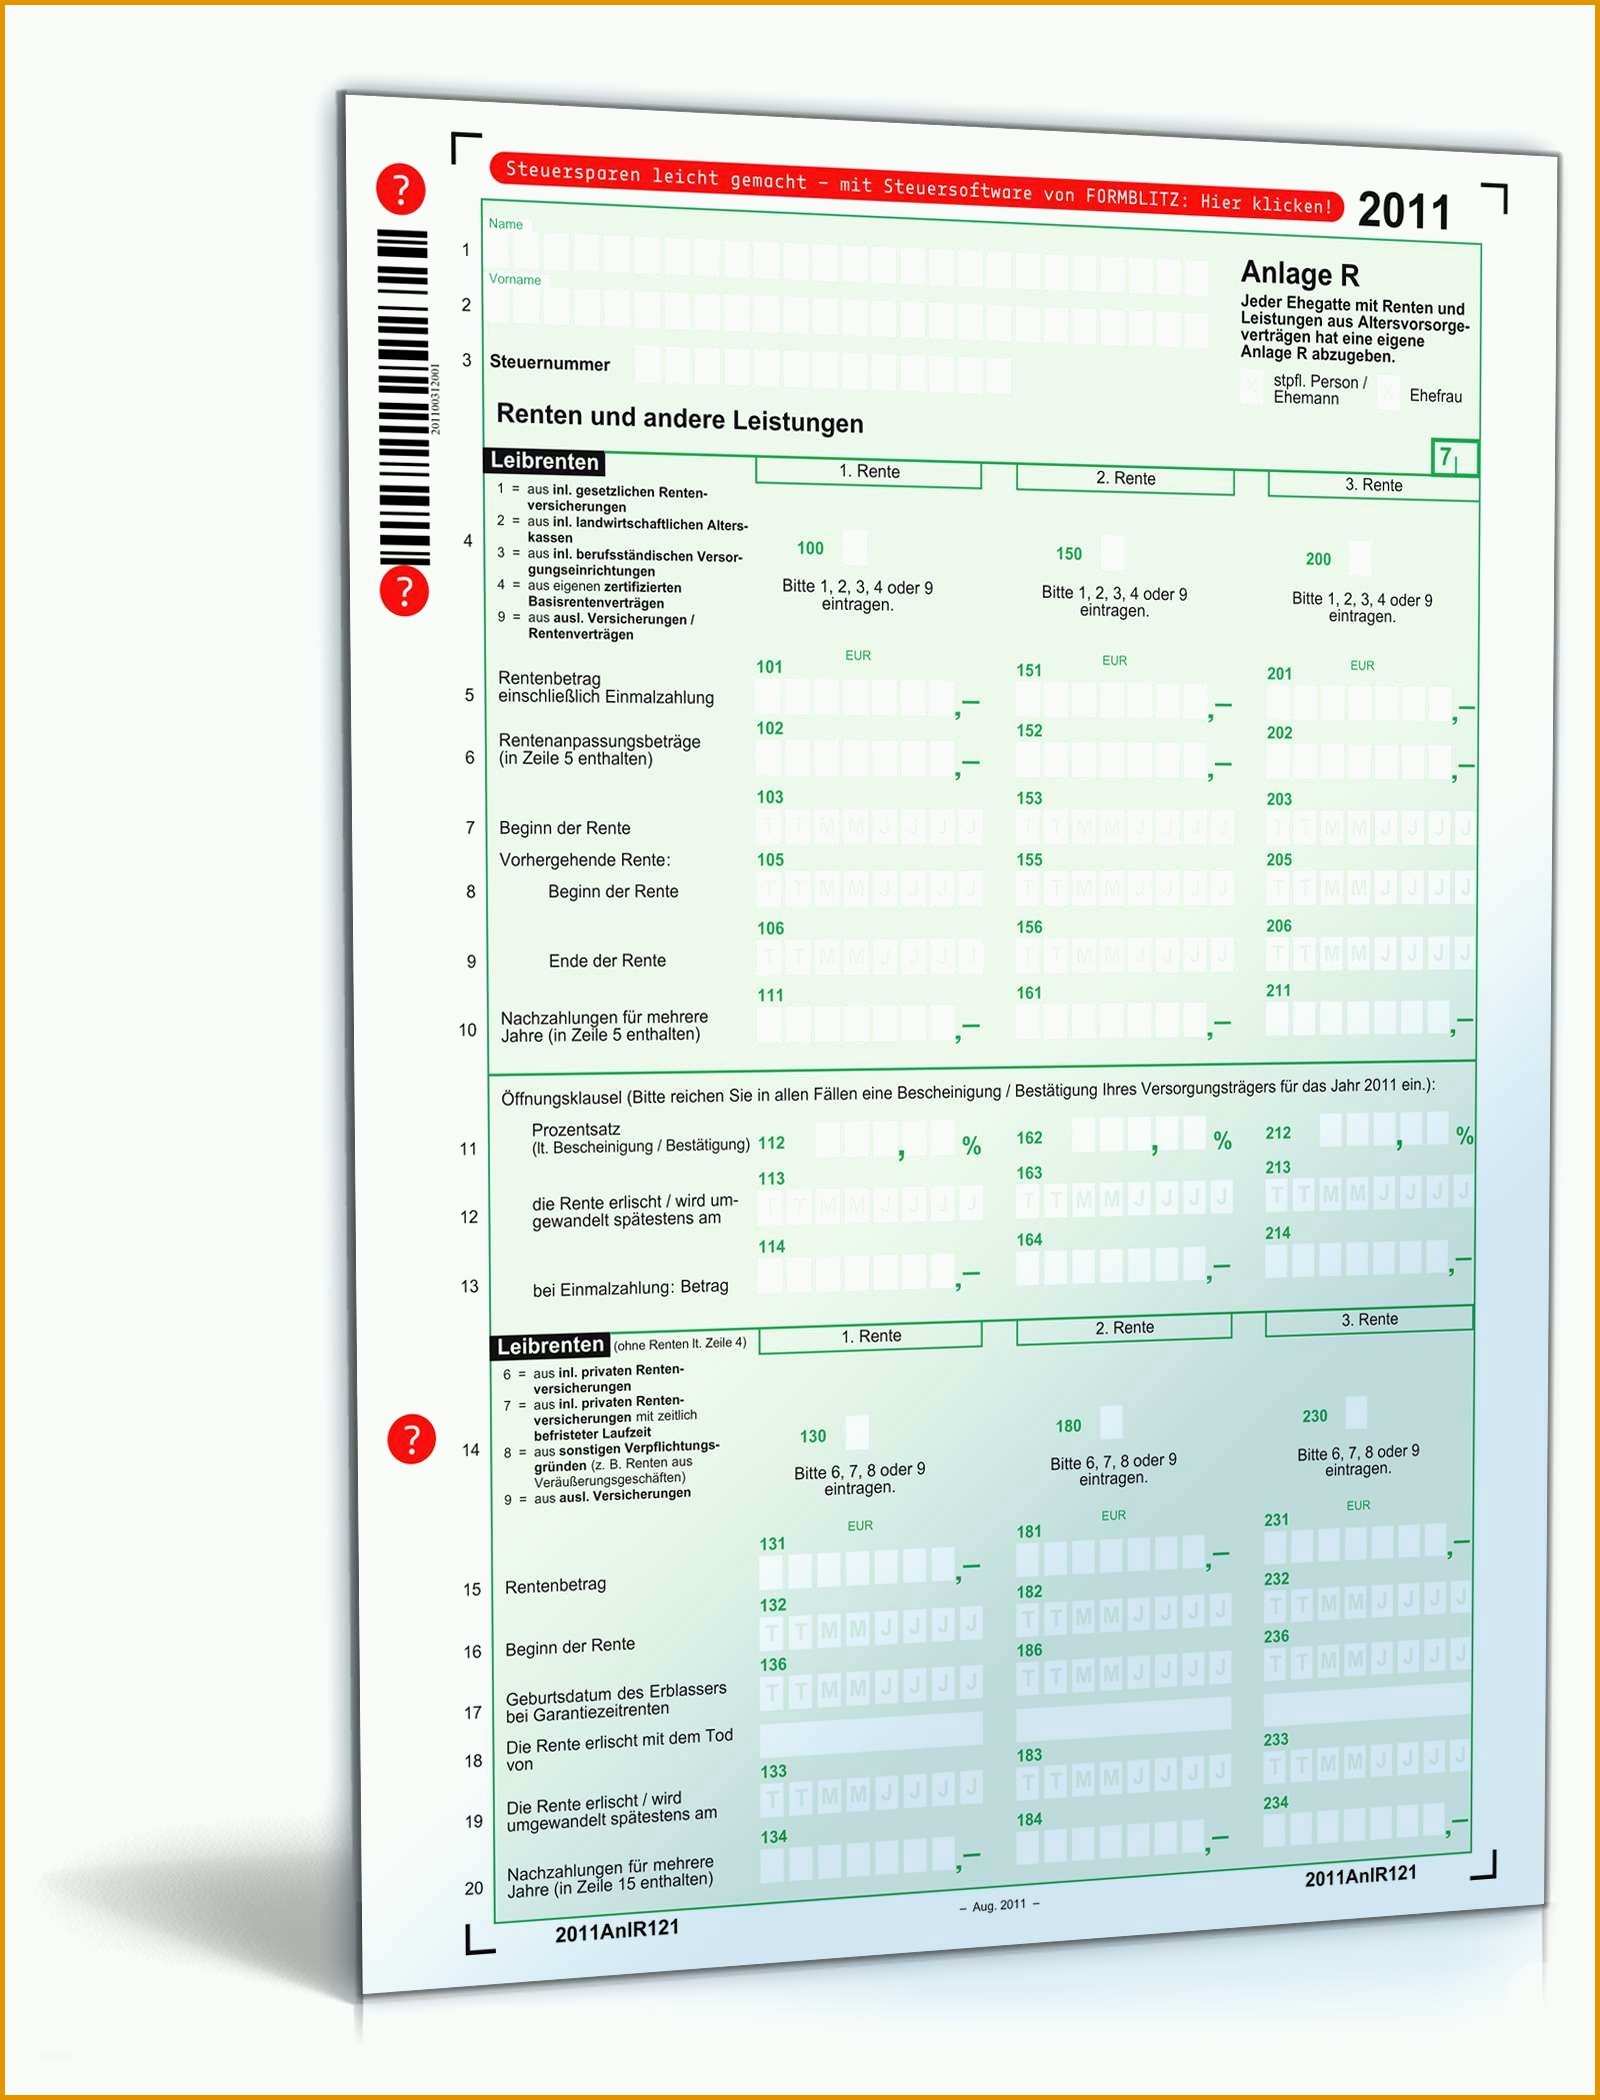 einzigartig reisekostenabrechnung zur vorlage beim finanzamt anlage r 2011 formular zum